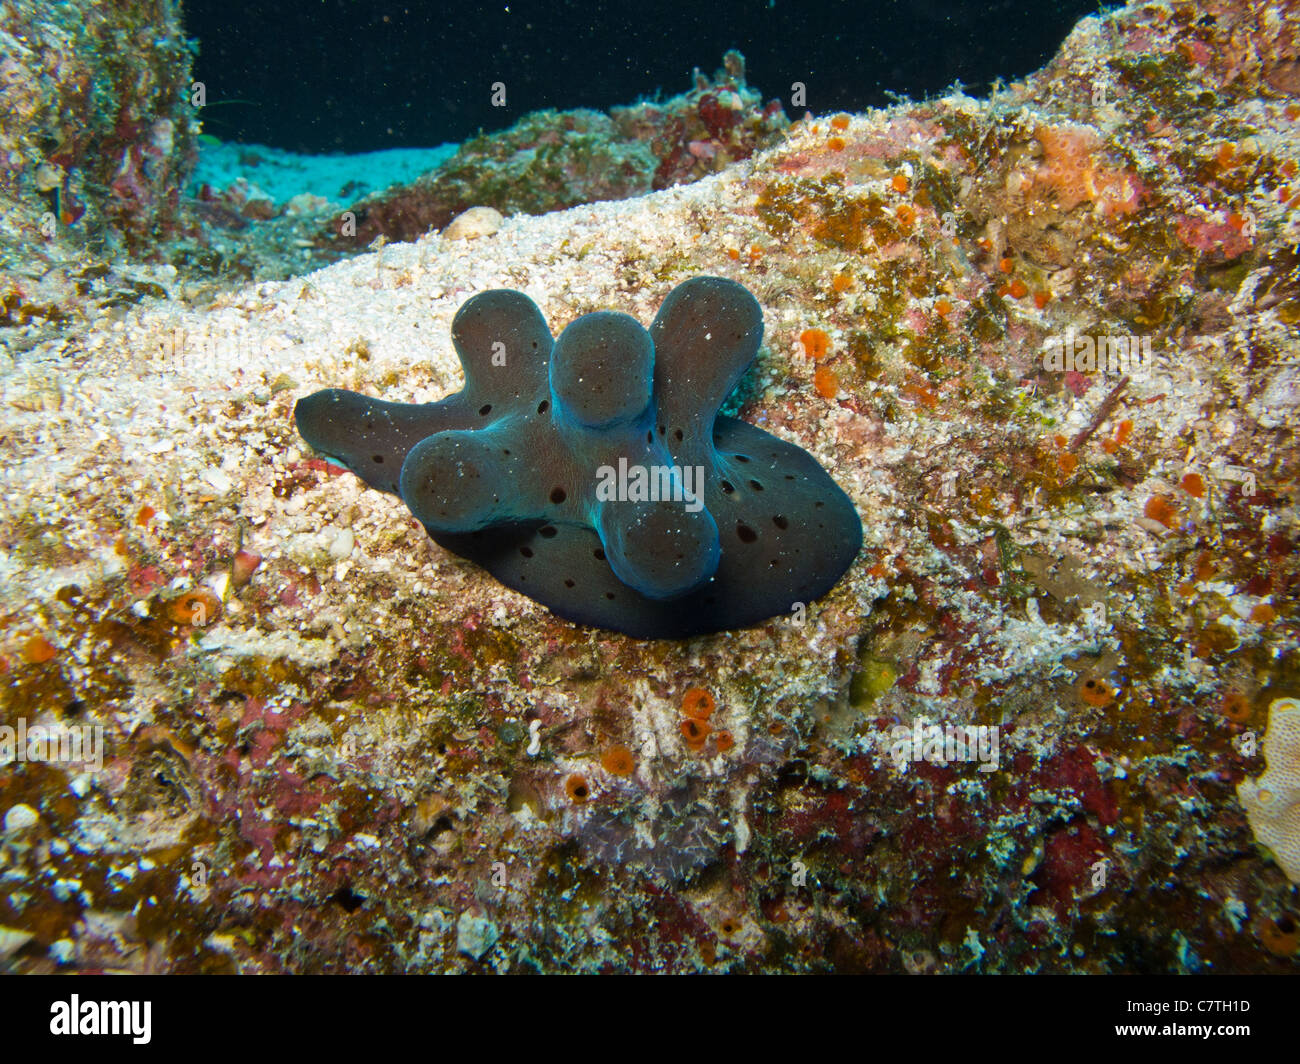 La Hiby Lamellarid, cinco cuernos univalves encontrados en arrecifes de coral Foto de stock